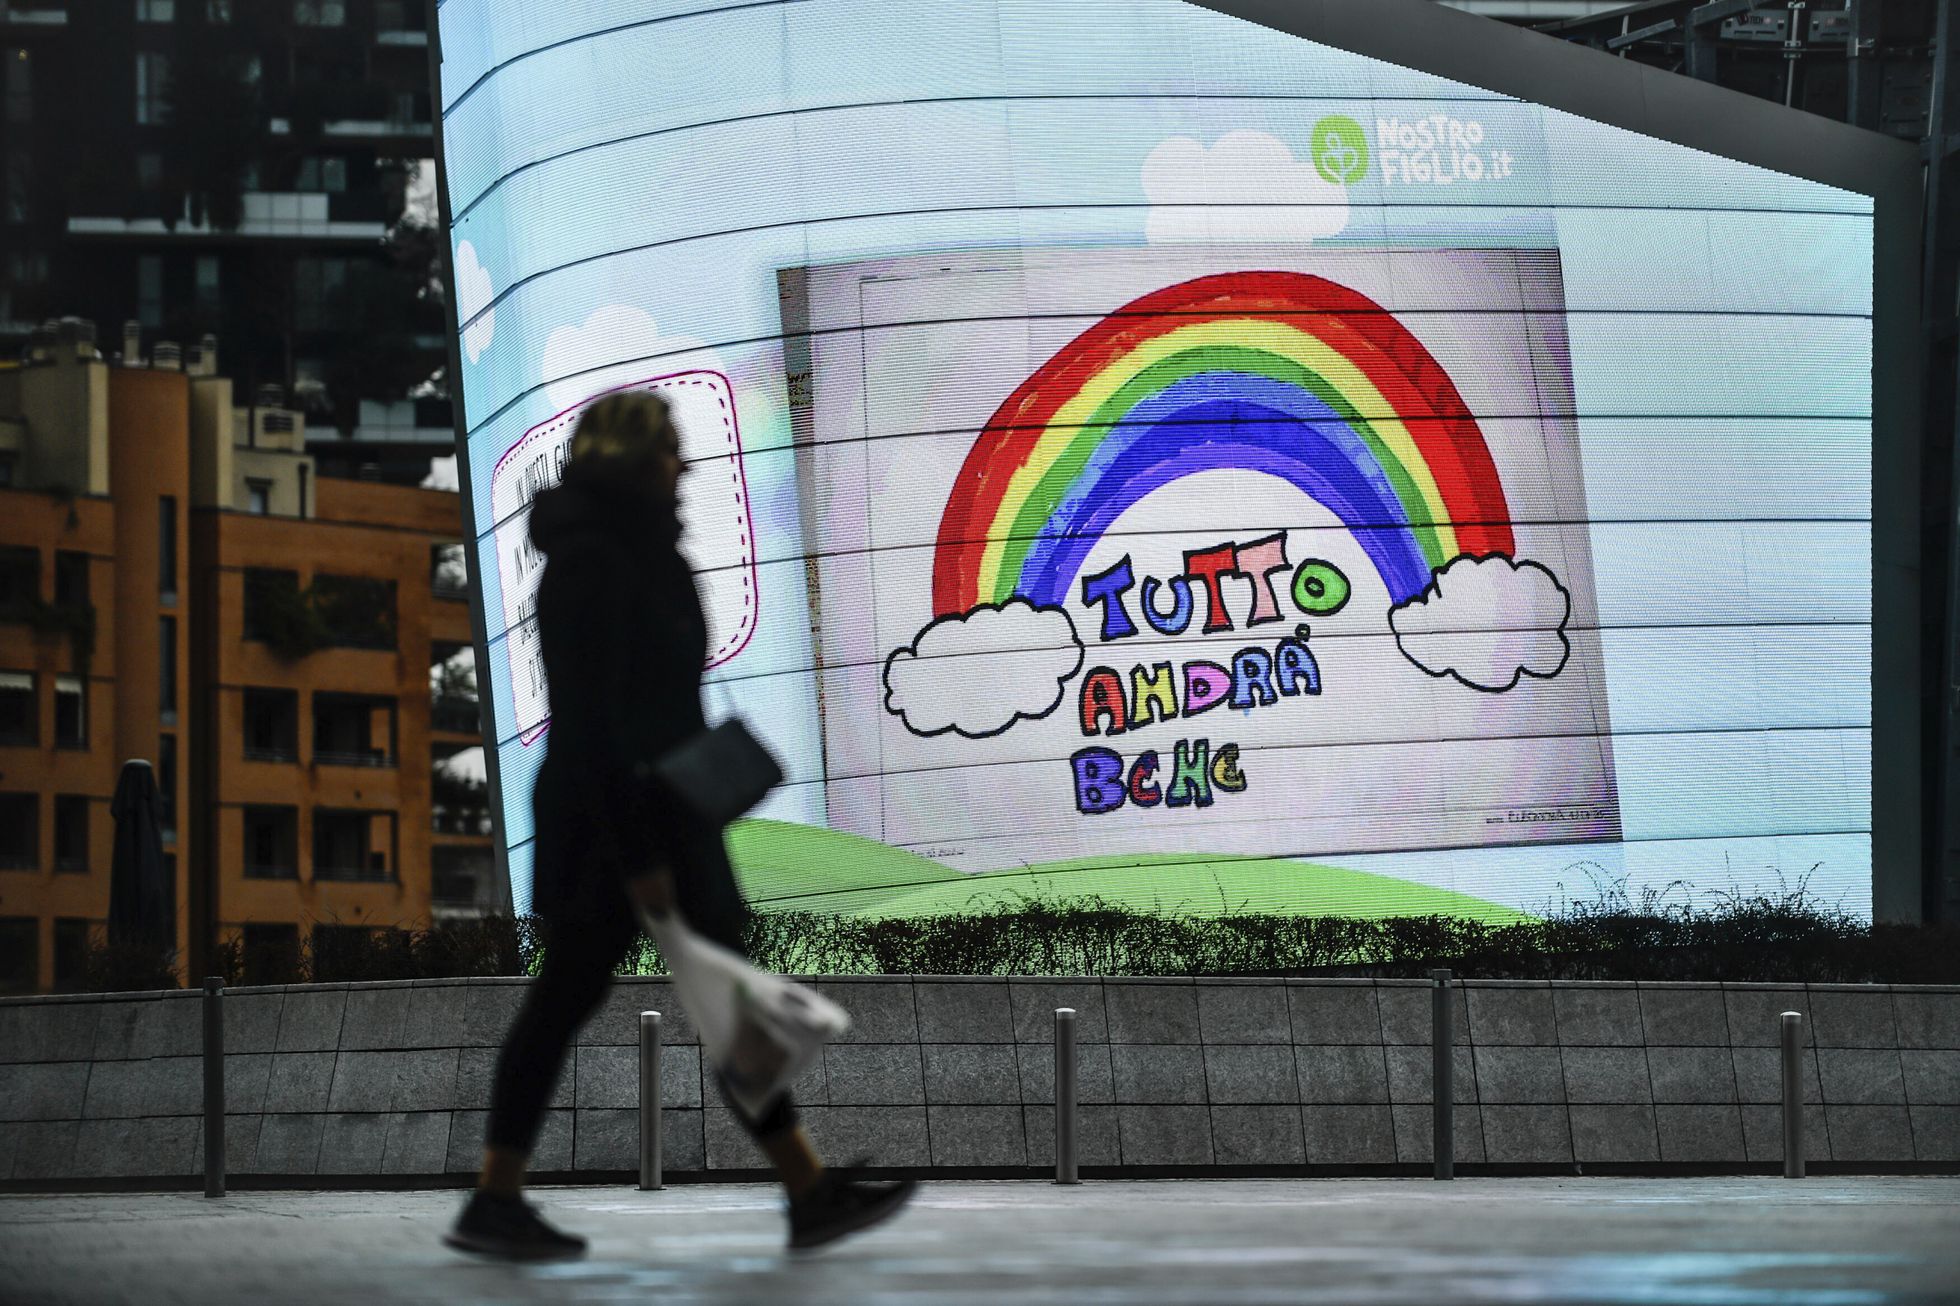 Reklāmas stends ar uzrakstu "viss būs kārtībā". Bērna zīmētā varavīksne ar uzrakstu ir kļuvusi par cerības simbolu itāliešiem Covid-19 uzliesmojuma laikā. Ilustratīvs attēls